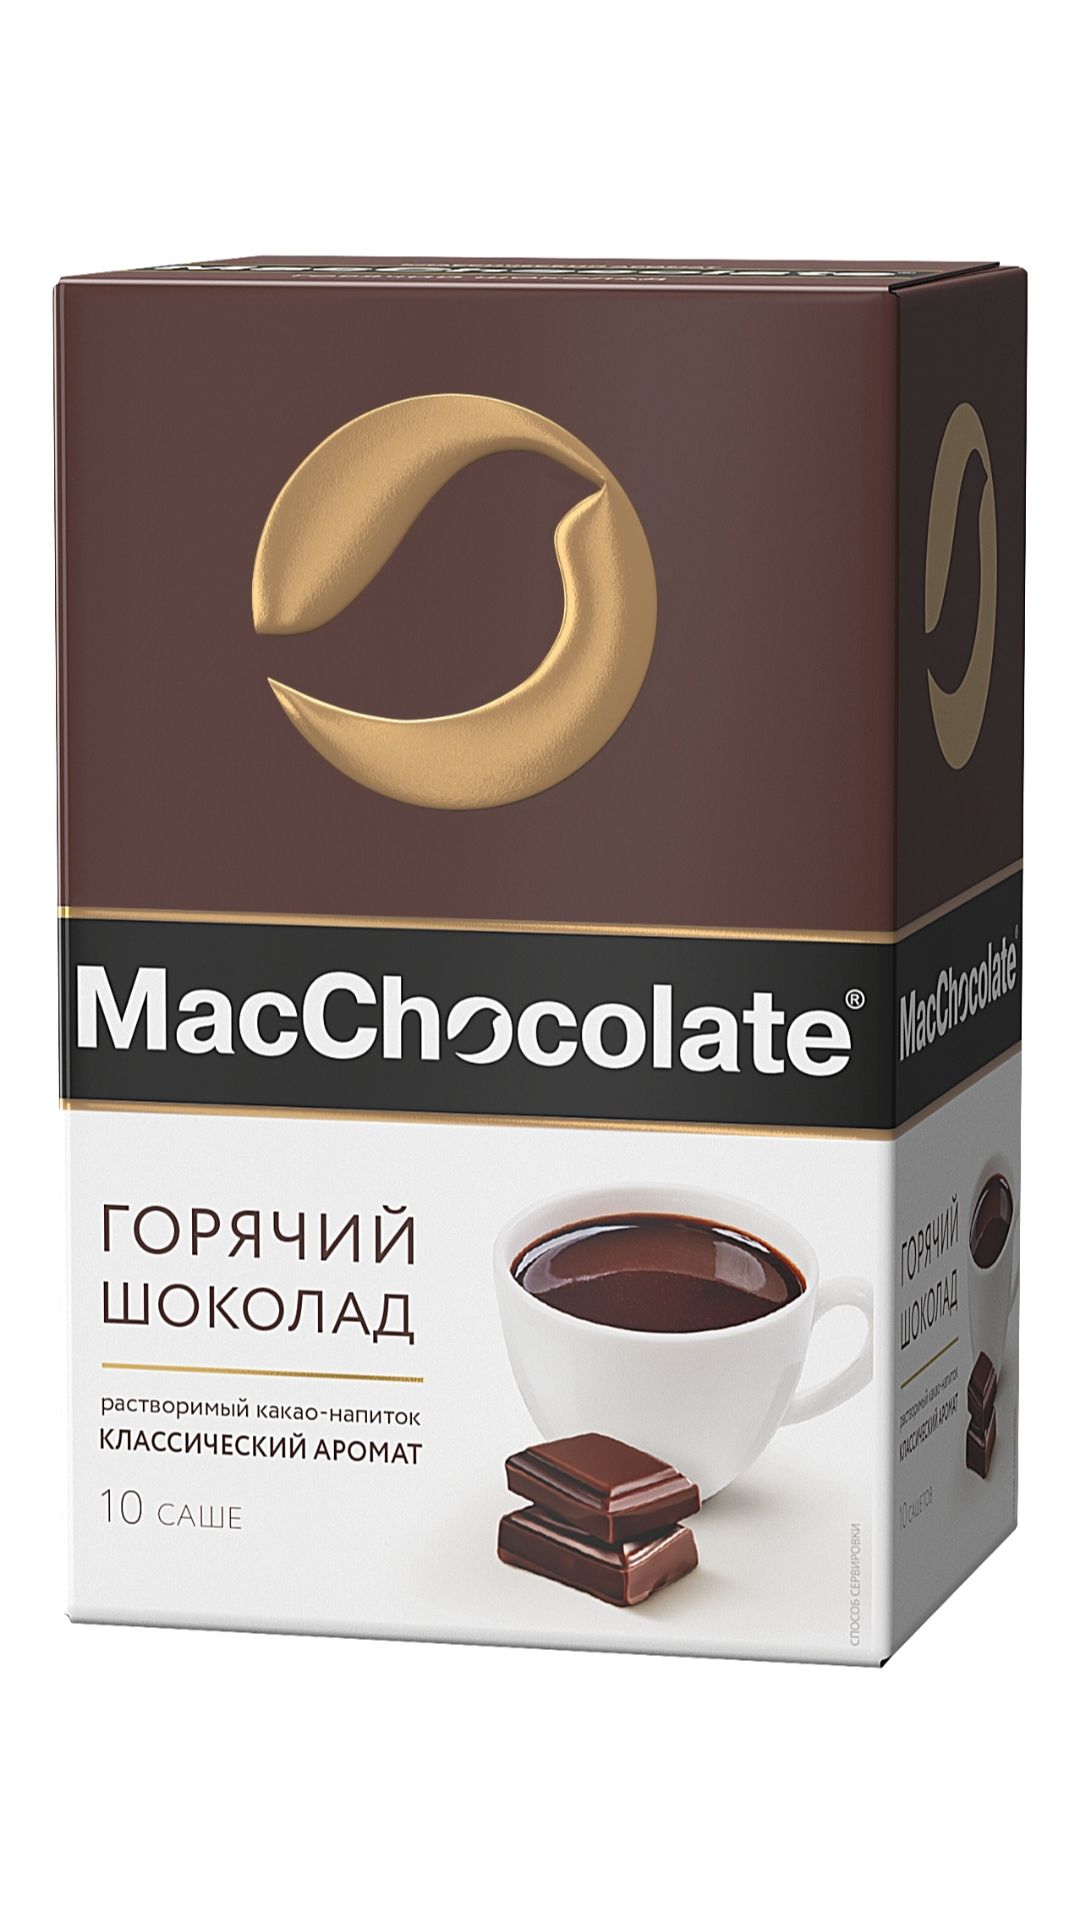 Купить горячий шоколад в пакетиках. Горячий шоколад MACCHOCOLATE 20г. Горячий шоколад MACCHOCOLATE классический 20 г. MACCHOCOLATE горячий шоколад 10 шт. Мак шоколад cacaobar (20г*10*10).